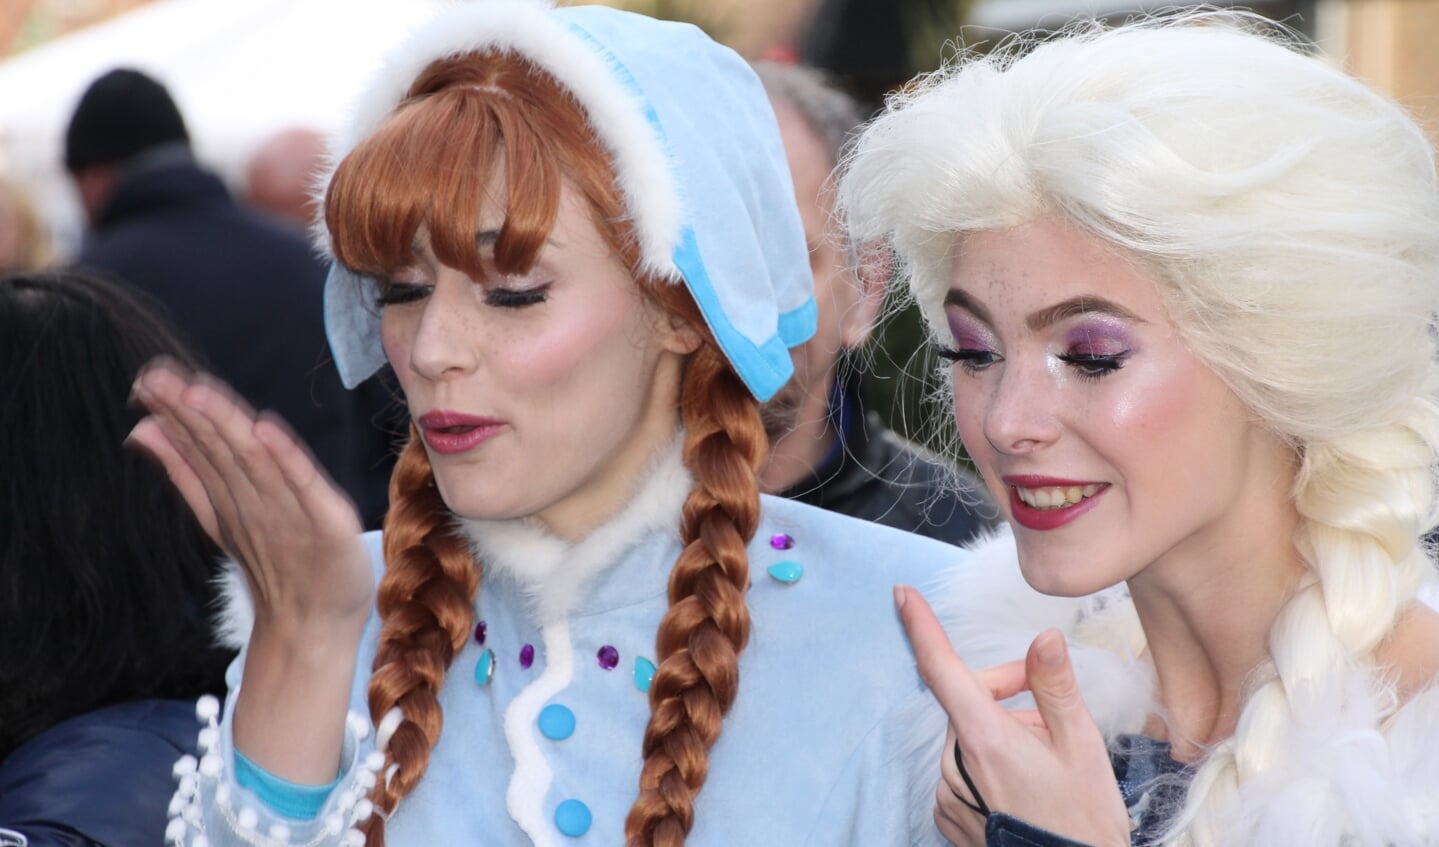 De ijsprinsessen uit Frozen, Anna en Elsa, delen handkusjes uit. Foto: Jos Betting